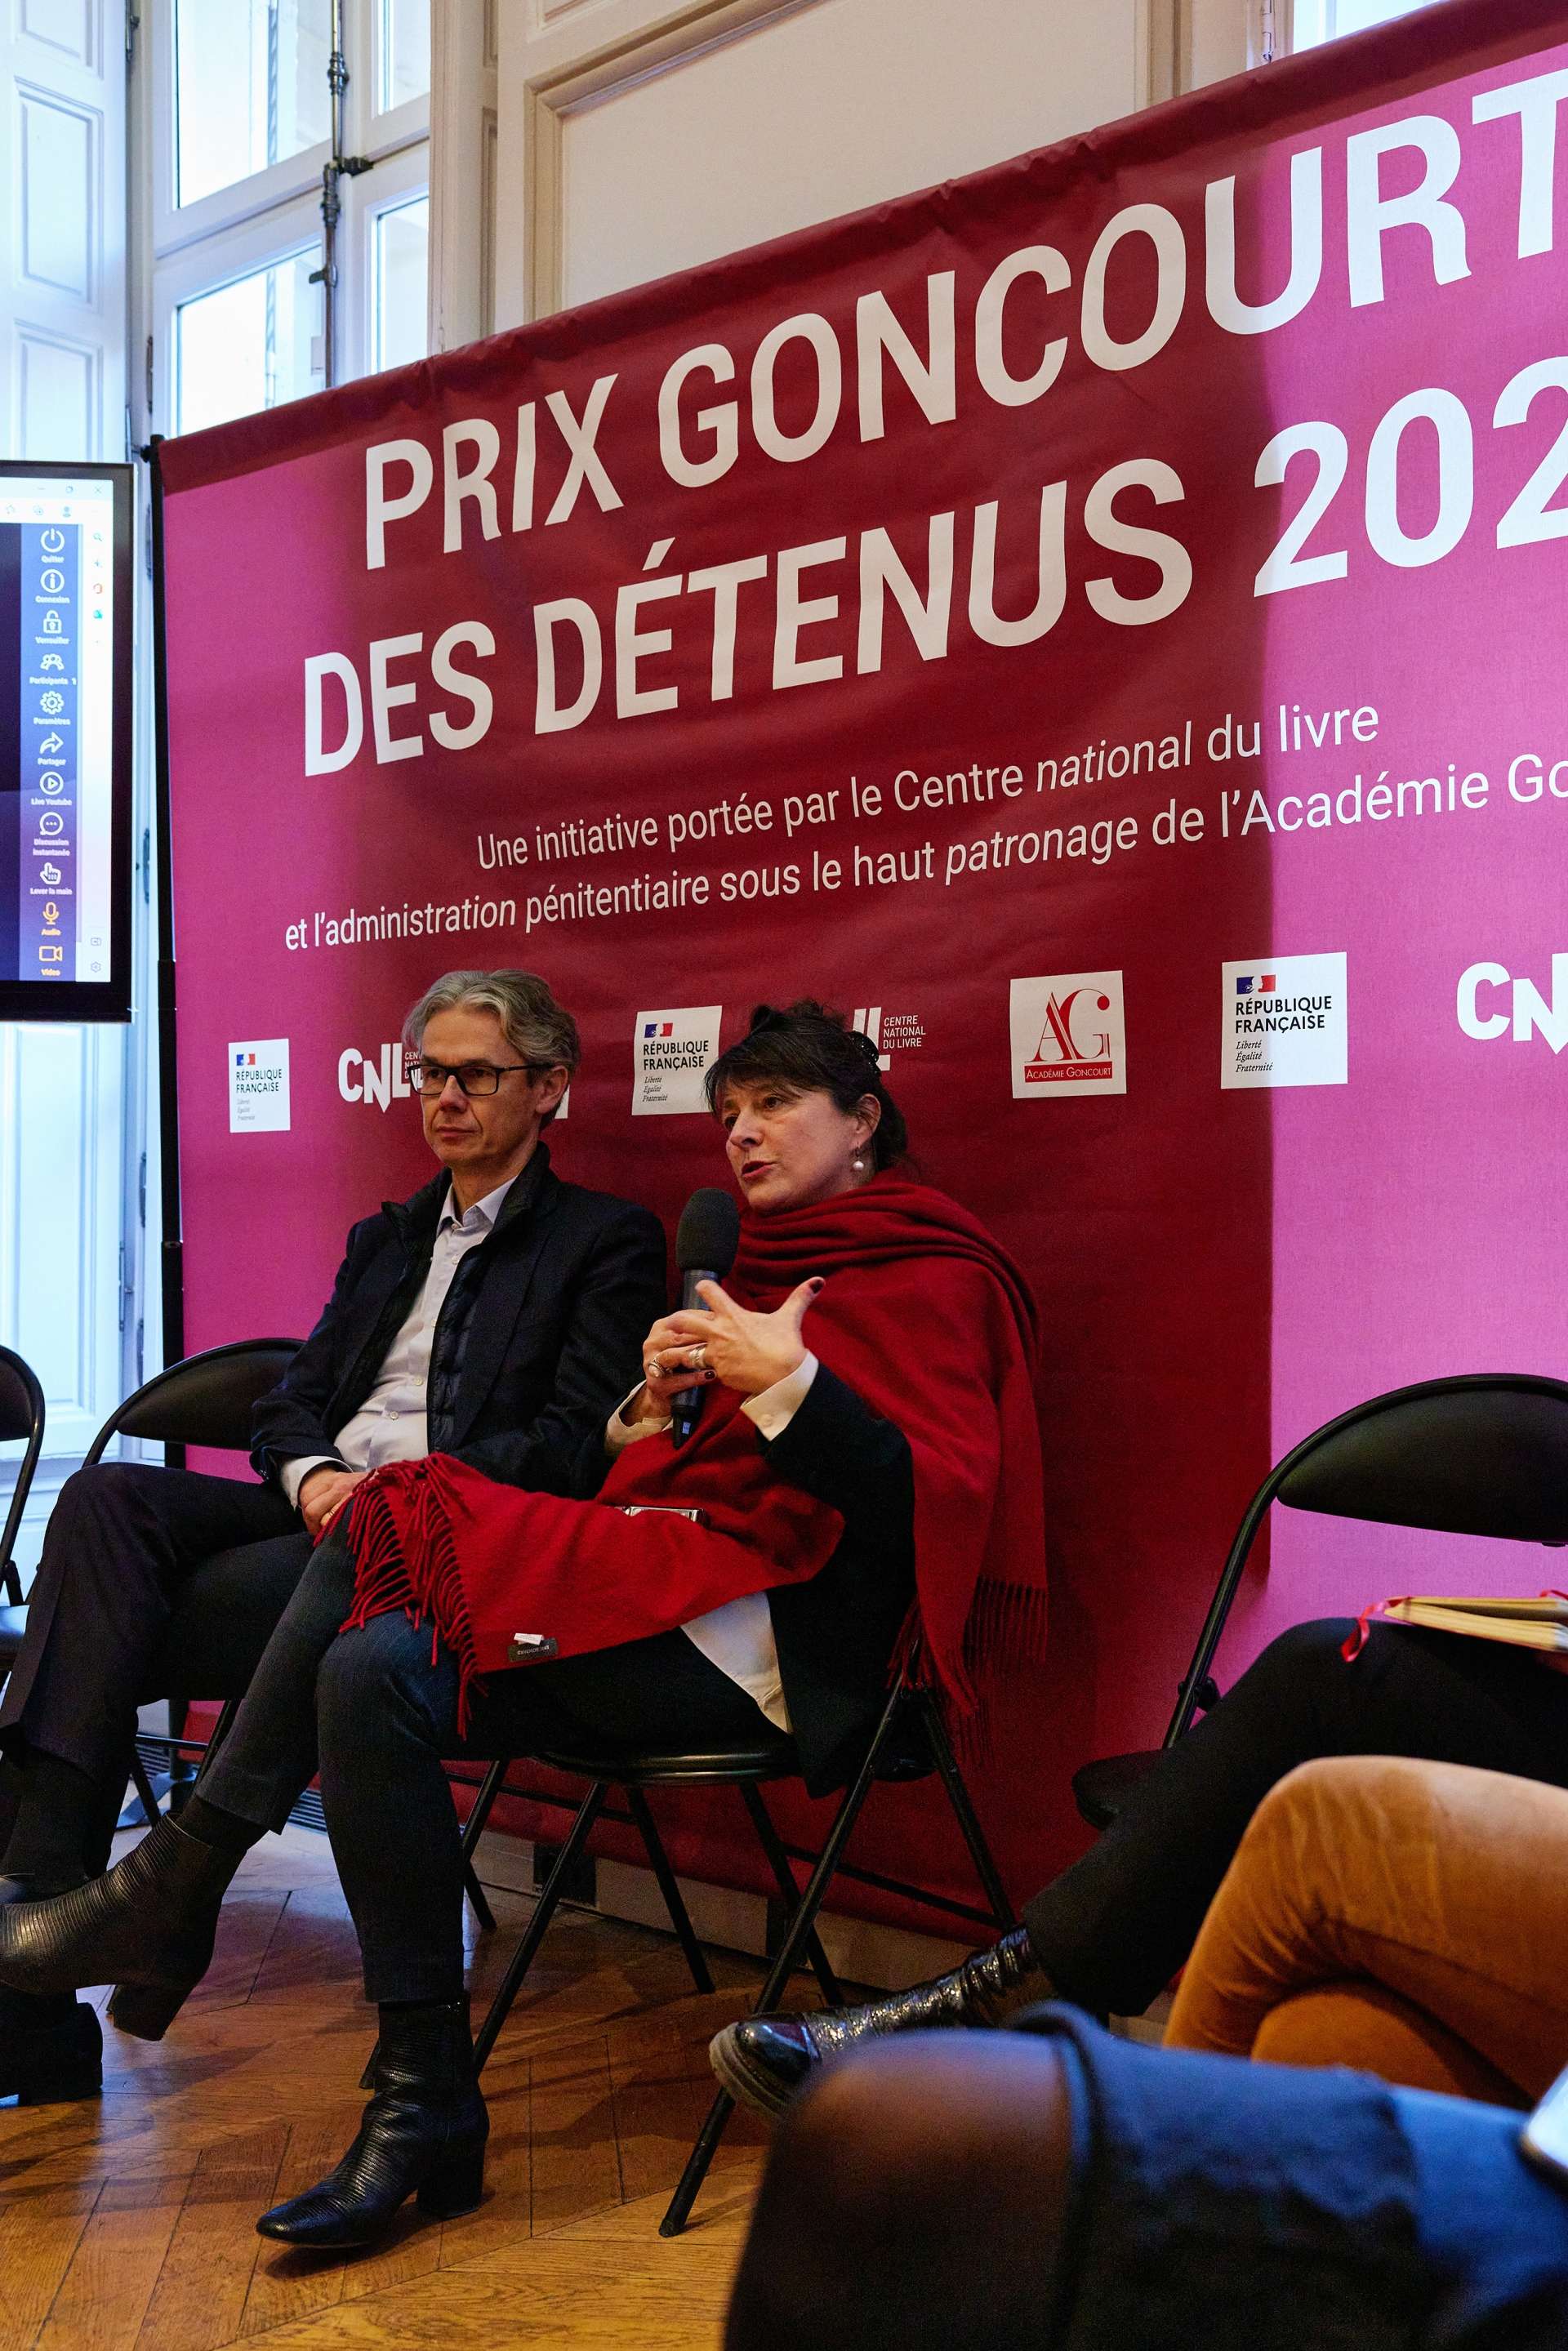 Deux personnes sont assises, l'une d'entre elles tient un micro. Derrière eux, il y a une toile rouge foncée tendue avec l'inscription "Prix Goncourt des détenus 2022"